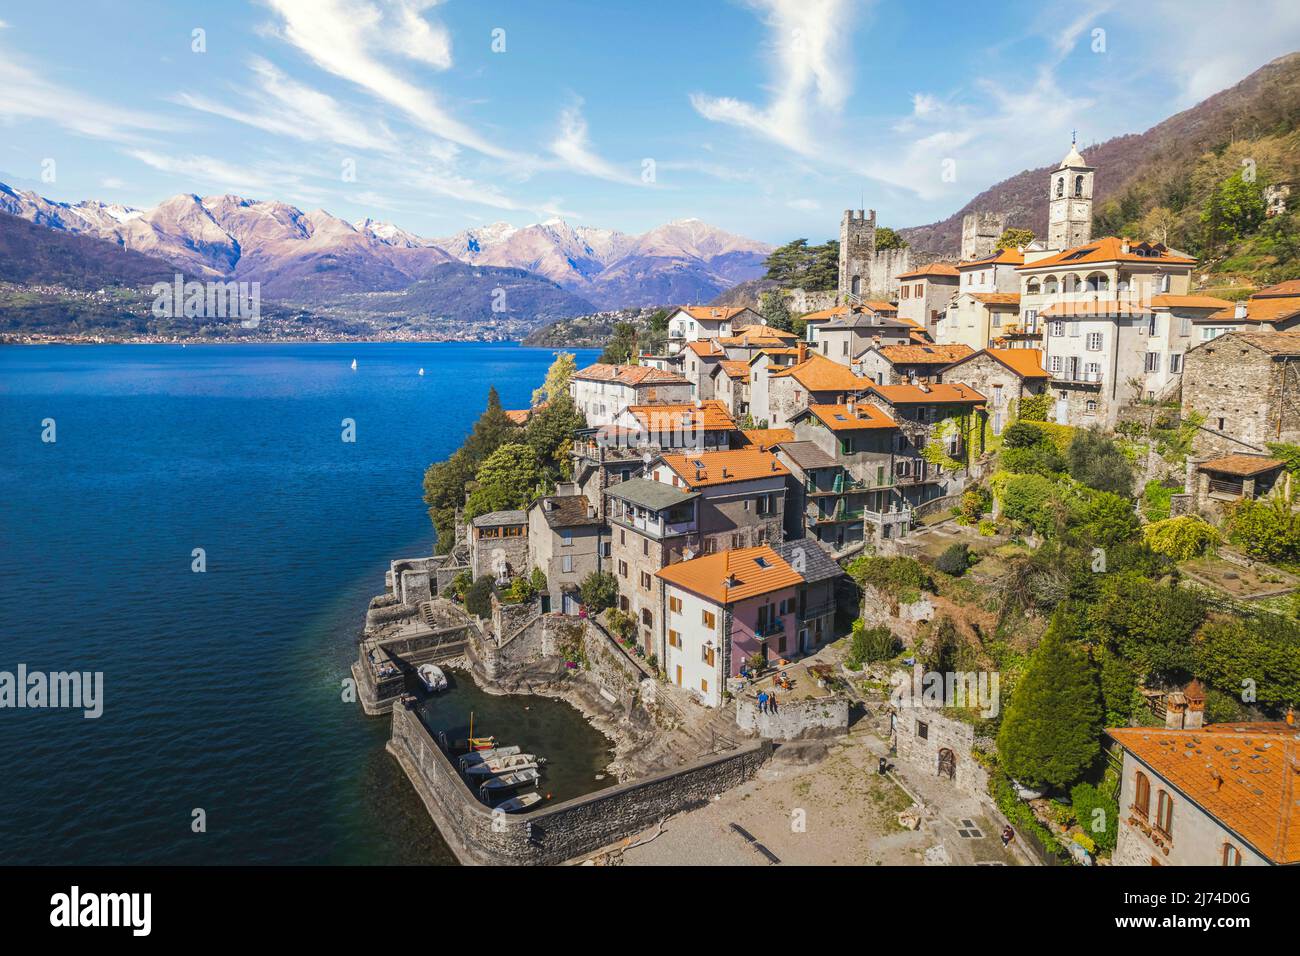 Aerial view of the village Corenno Plinio, Lake Como, Italy Stock Photo